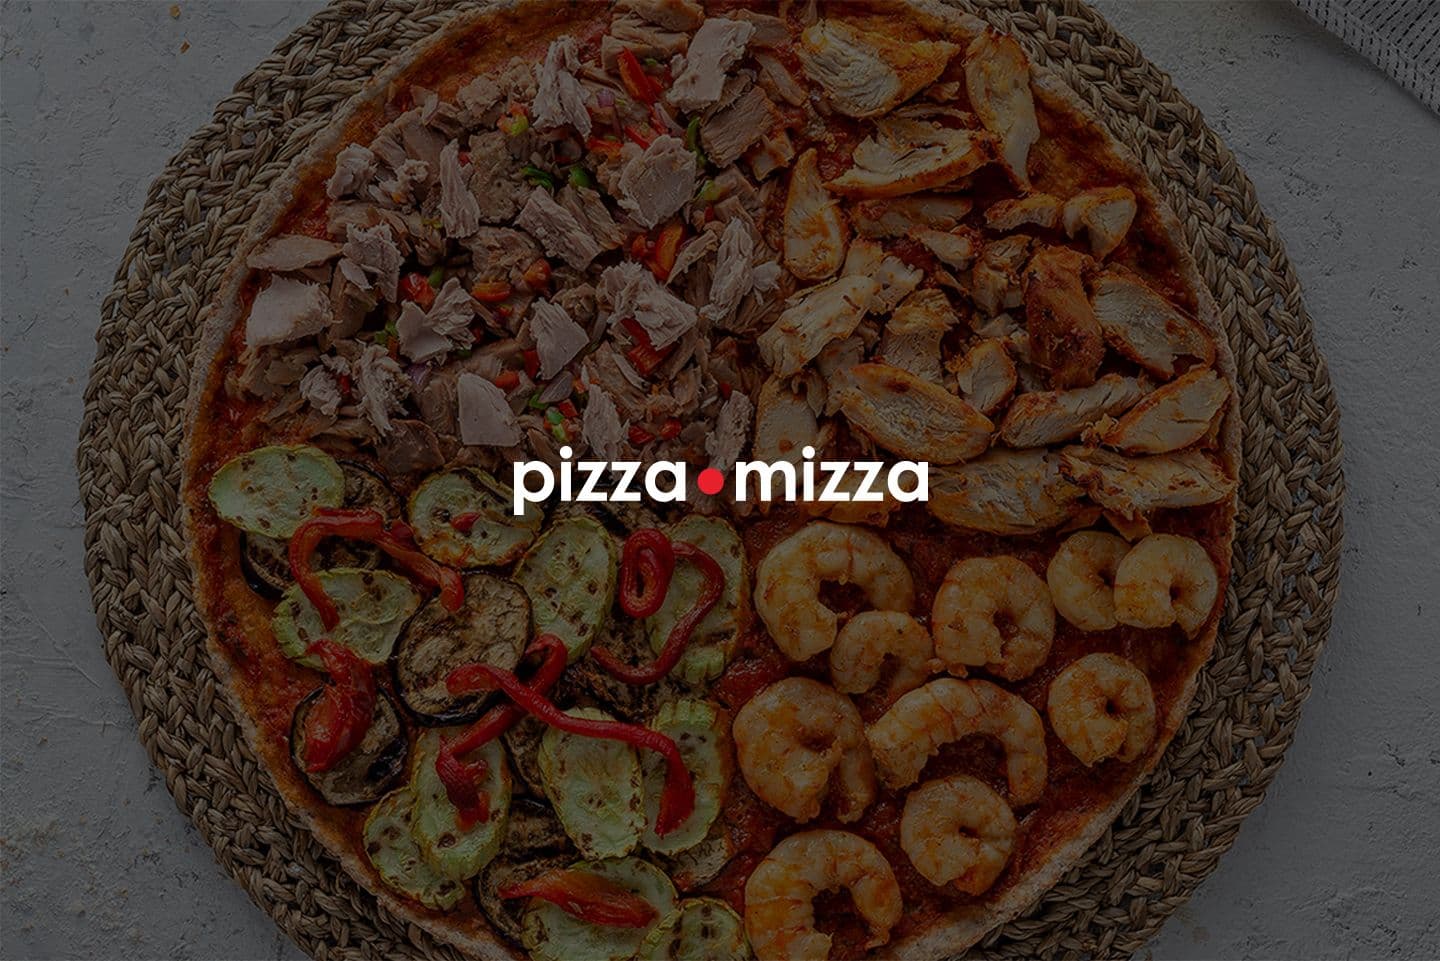 1pizza-mizza-case.jpg